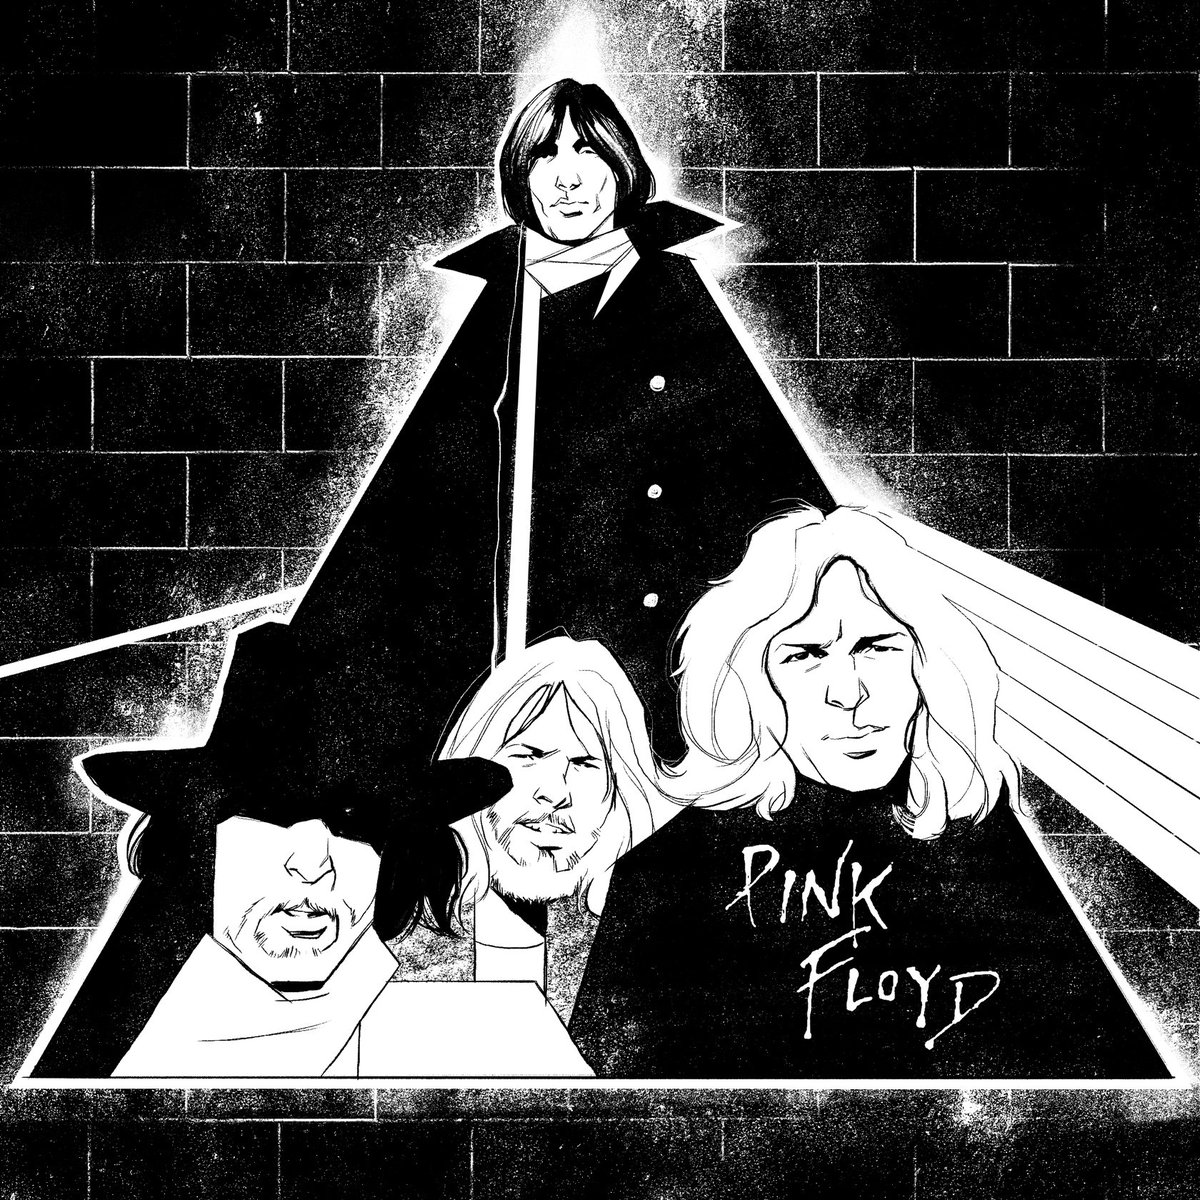 Day 10: Pink Floyd
Songs: High Hopes, Fearless, Comfortably Numb, Time

#pinkfloyd @pinkfloyd @rogerwaters #illustration #inktober #inktober2019 #art 